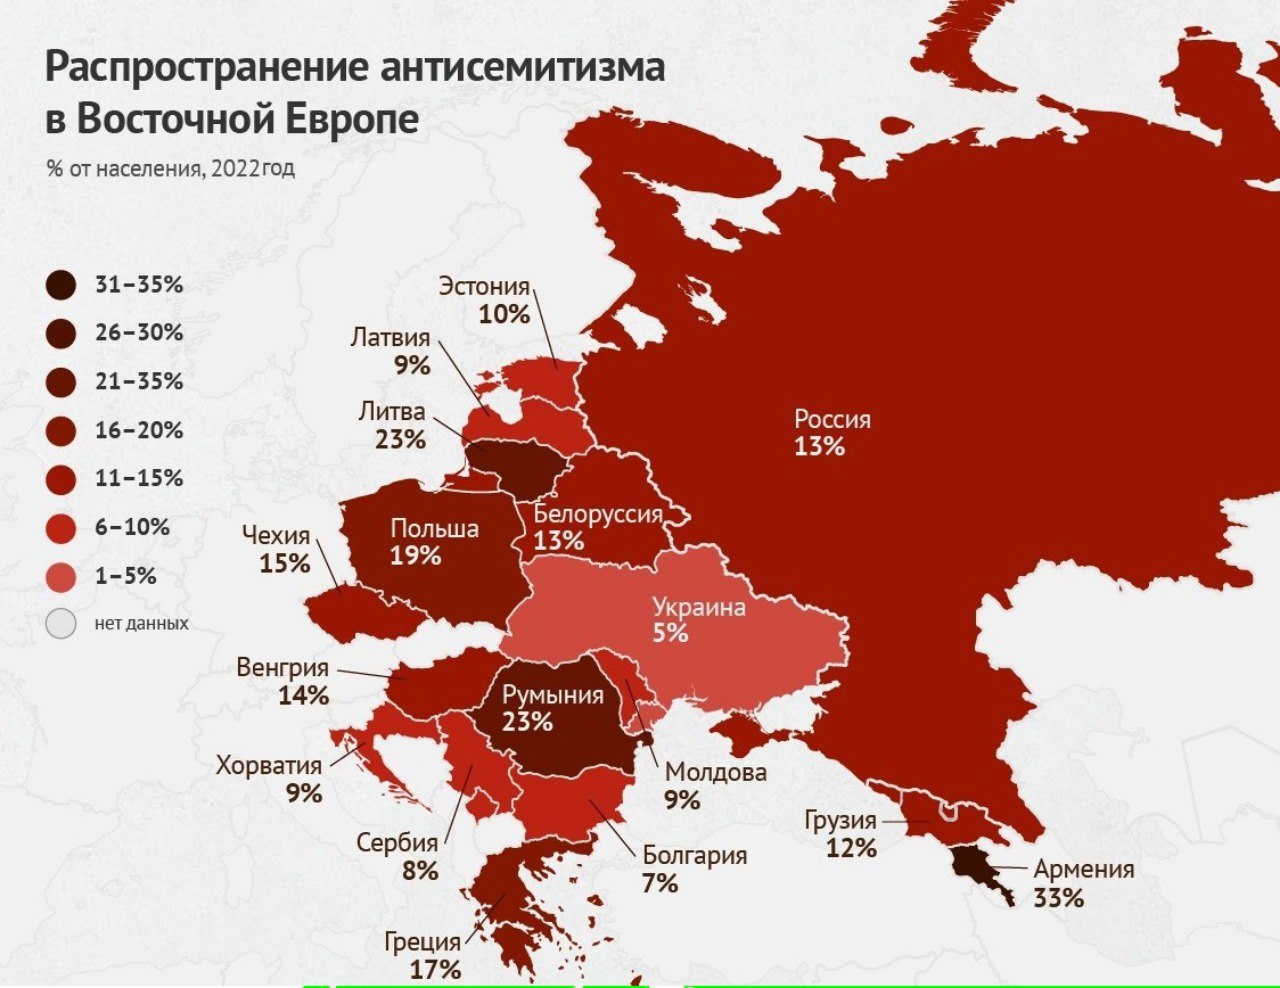 Население восточно европейская россия